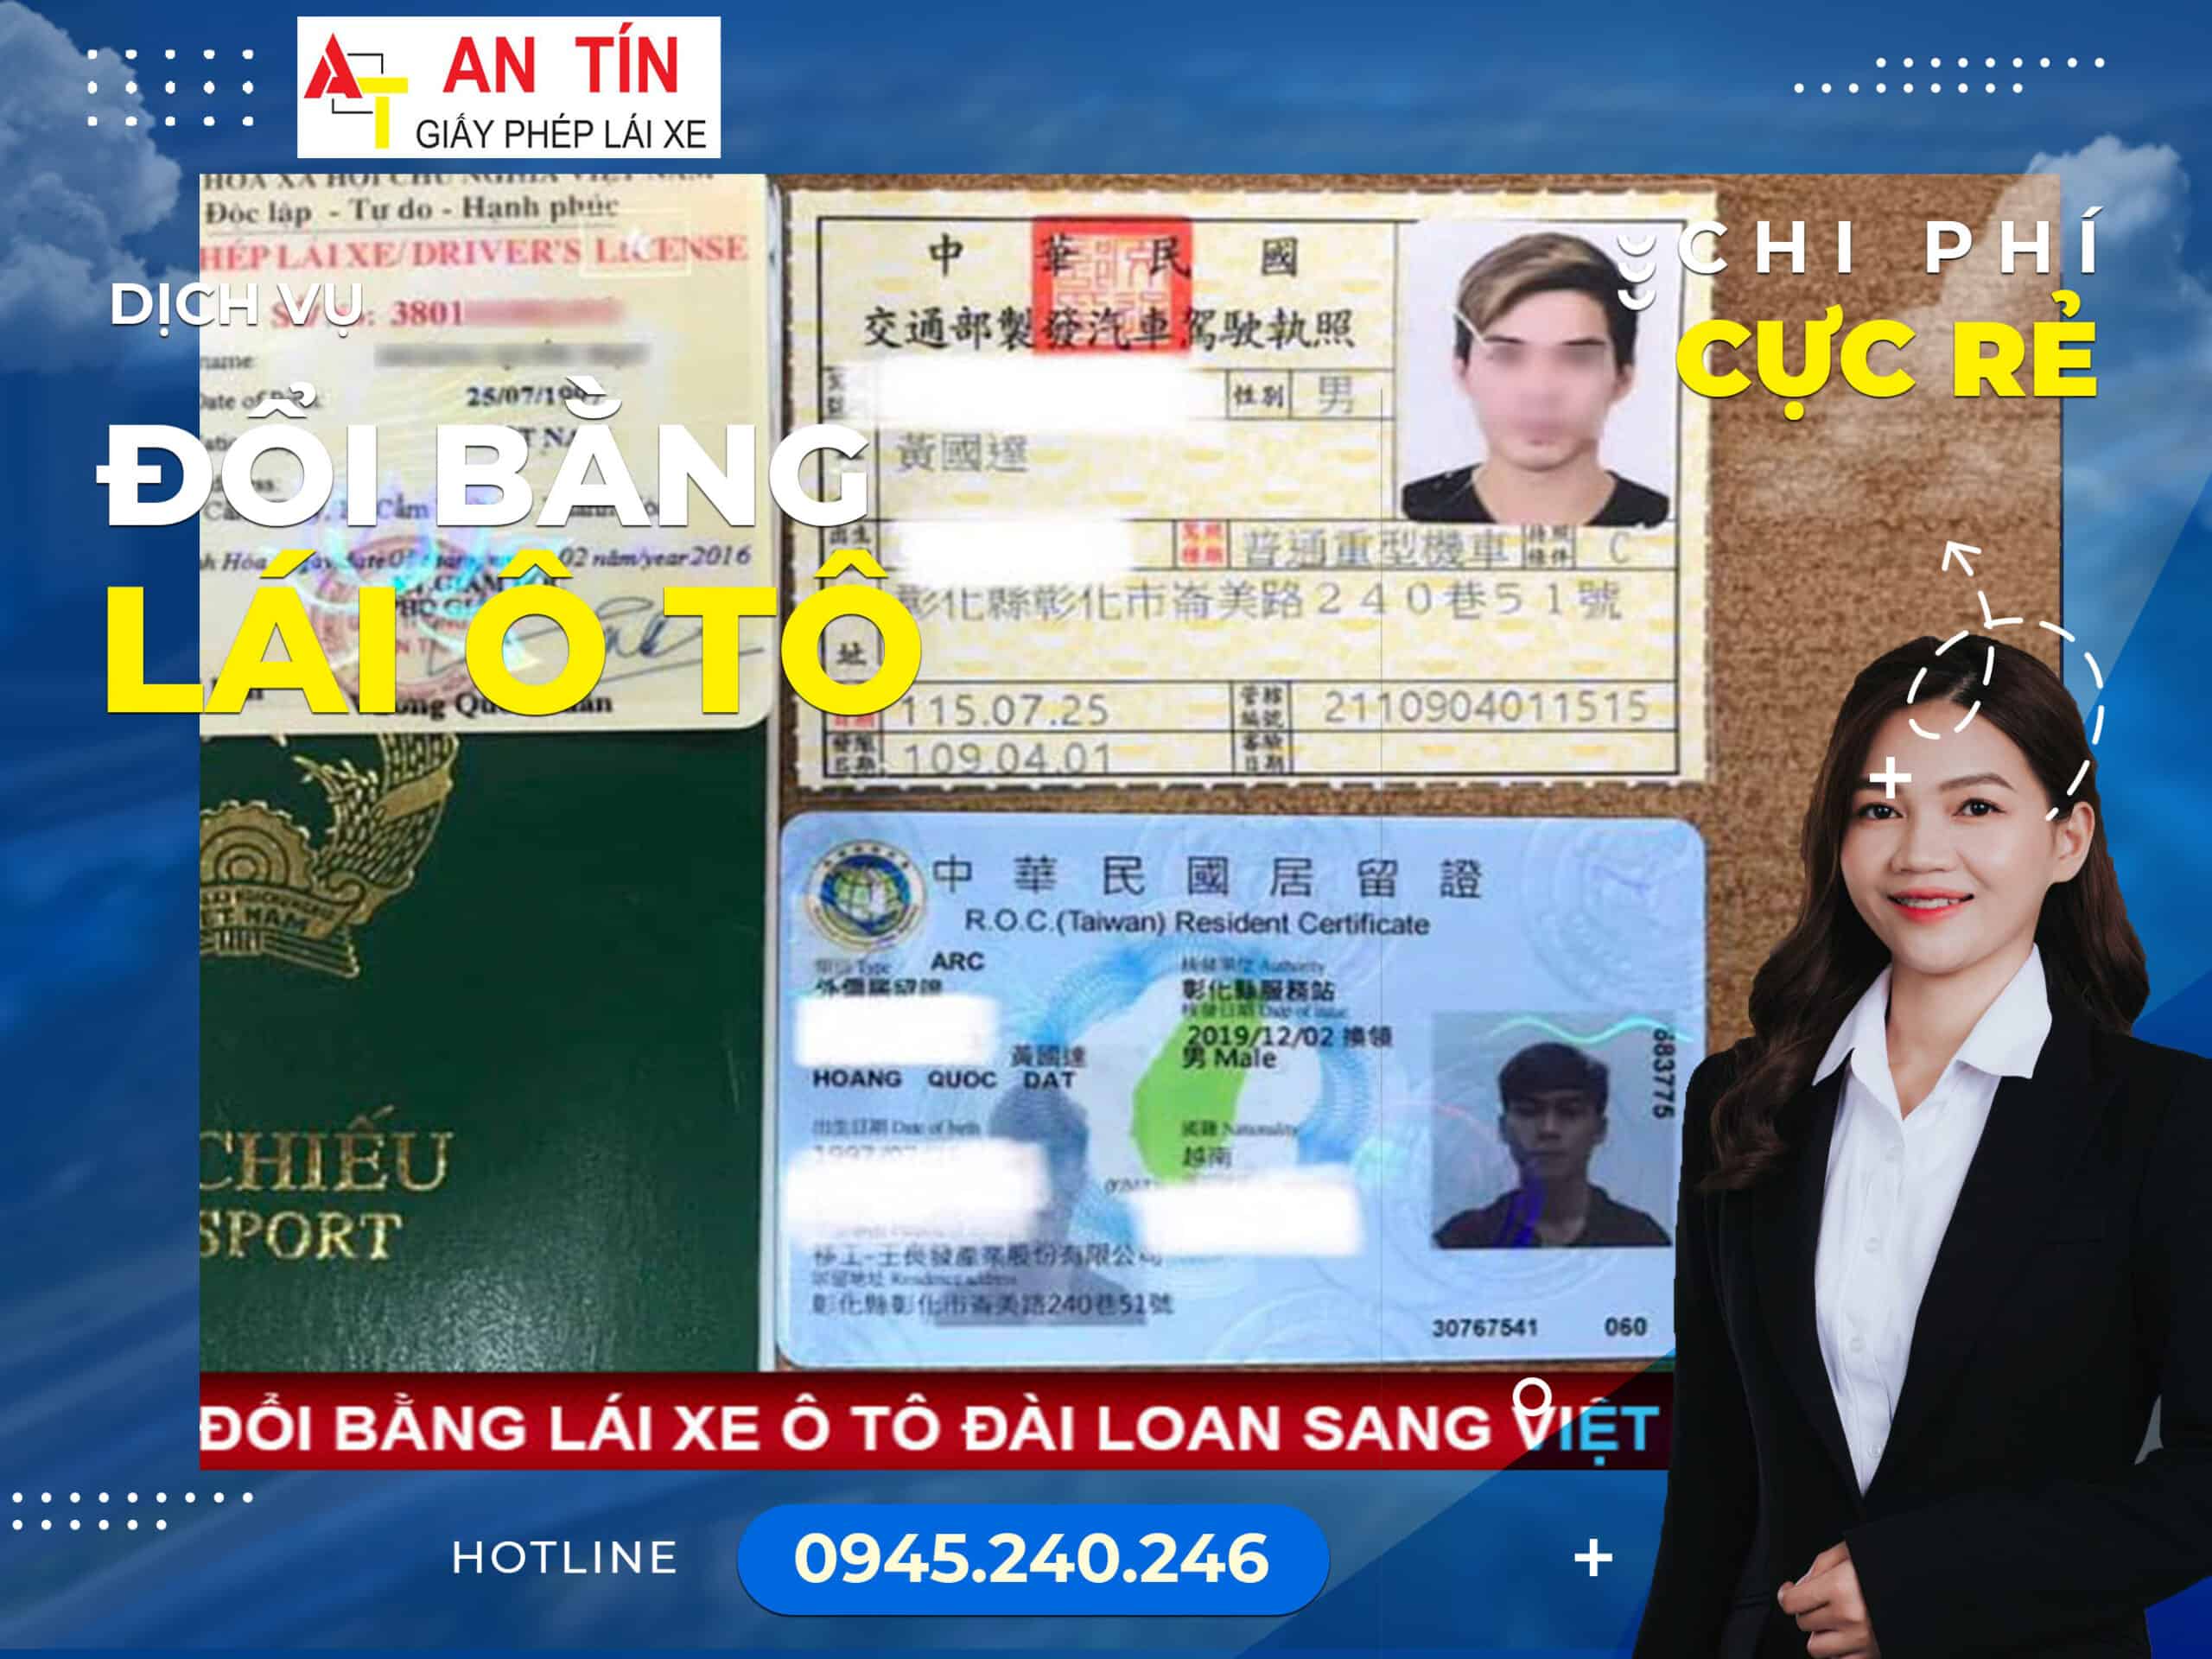 Quy định chấp hành theo Bộ Giao thông vận tải về việc đổi bằng lái Đài Loan sang Việt Nam.